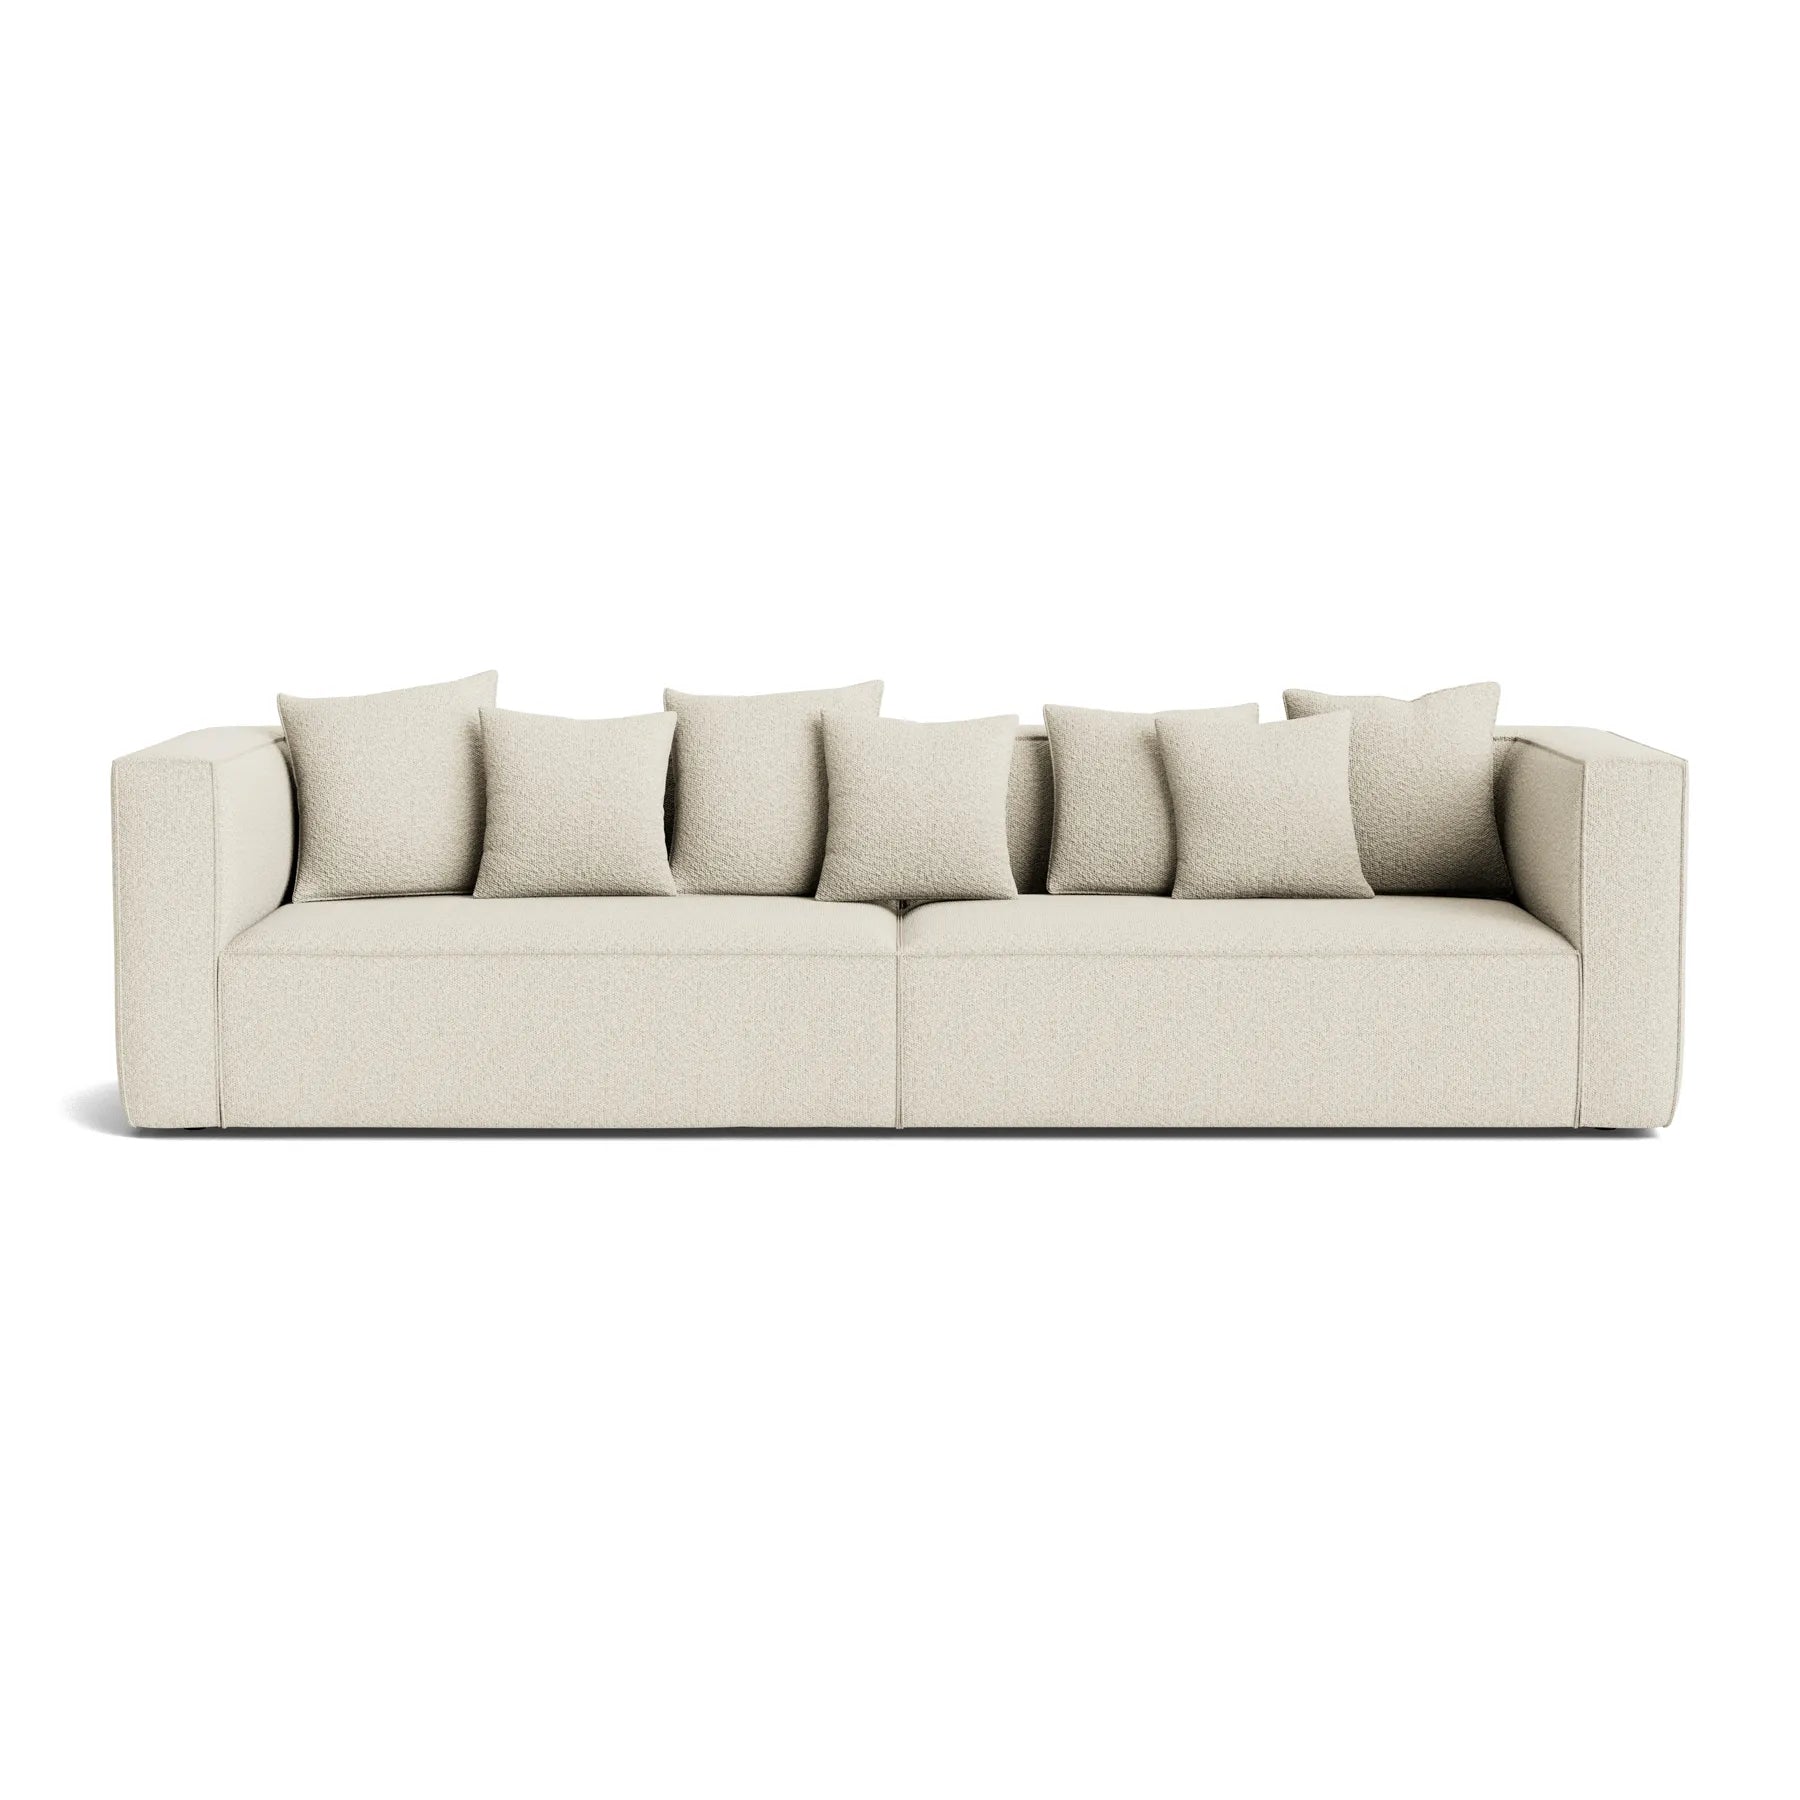 Buy Block 4 Seater Sofa - Copenhagen Grey by RJ Living online - RJ Living